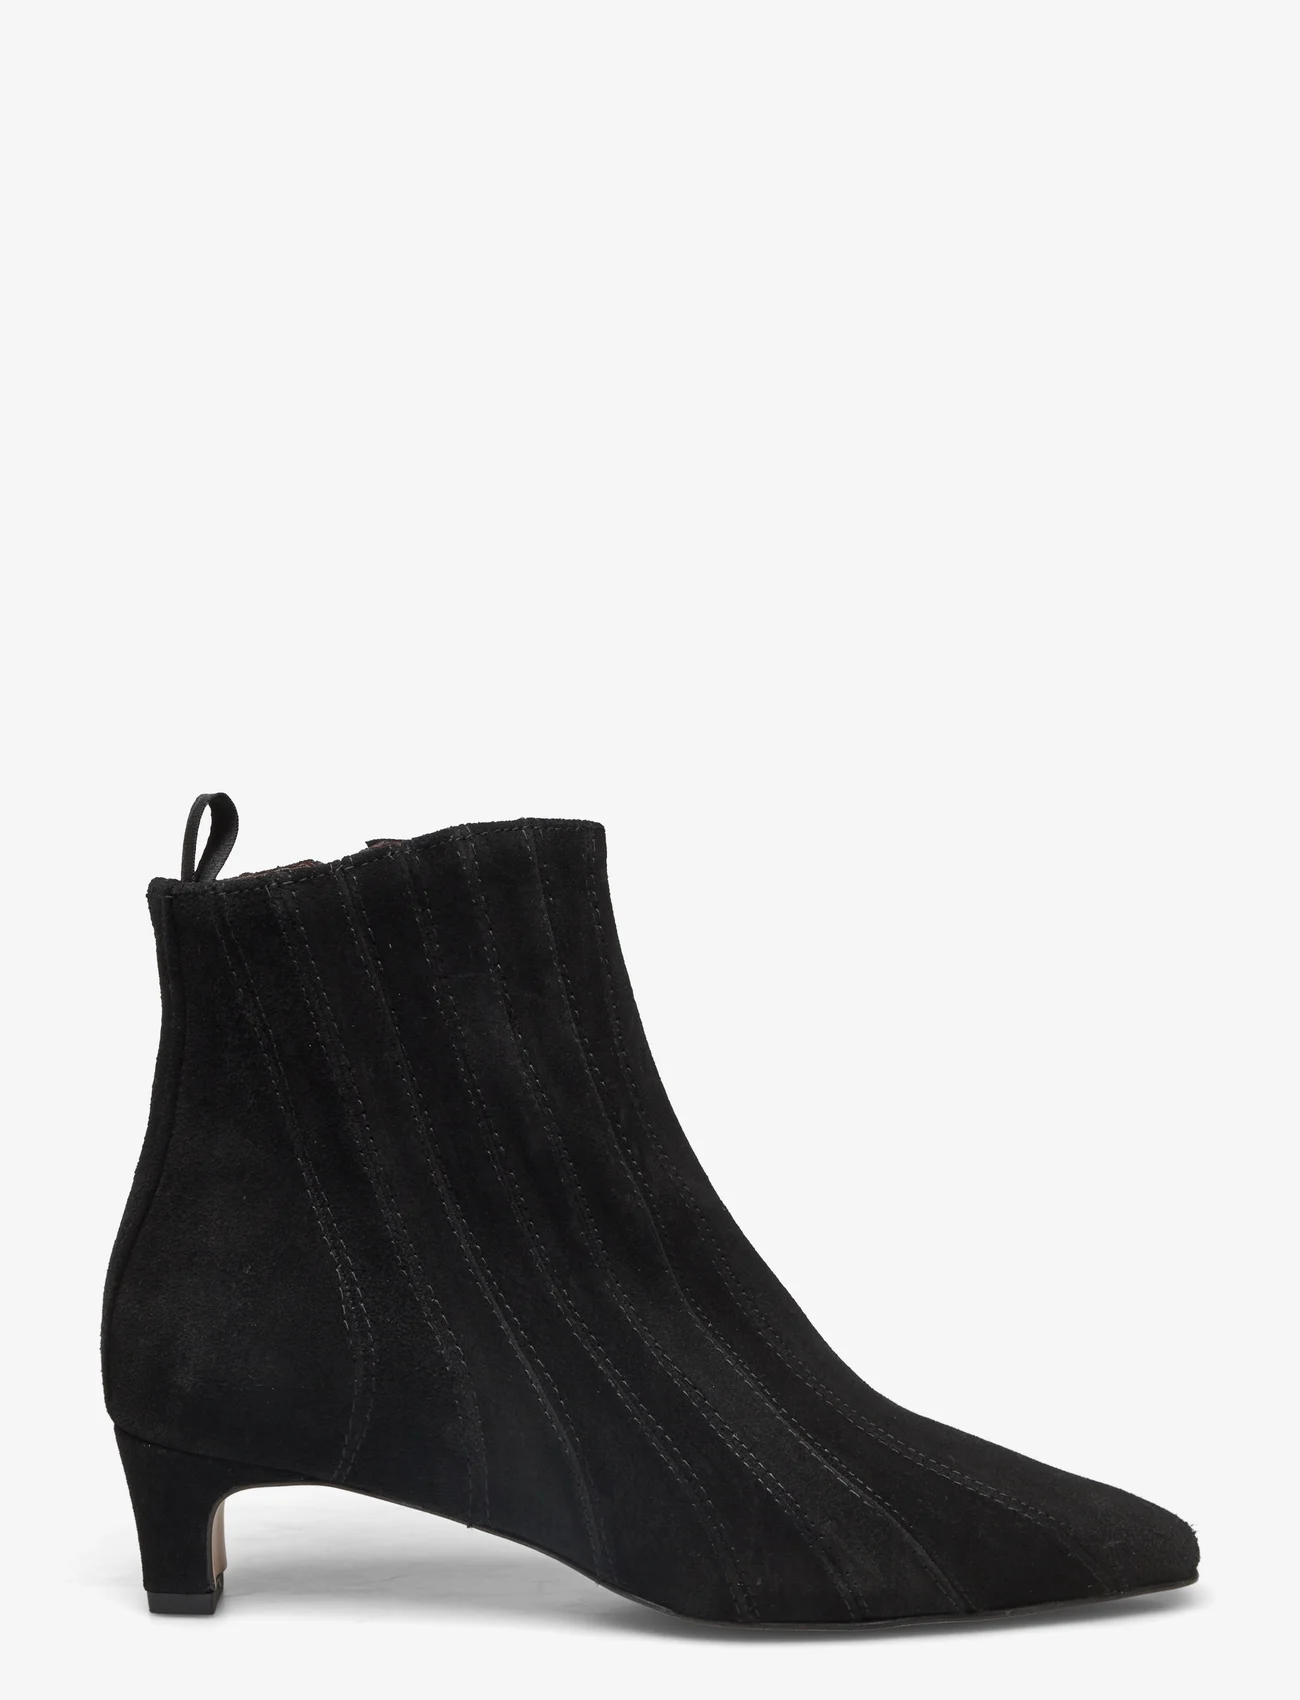 Anonymous Copenhagen - Jelai - high heel - calf suede black - 1